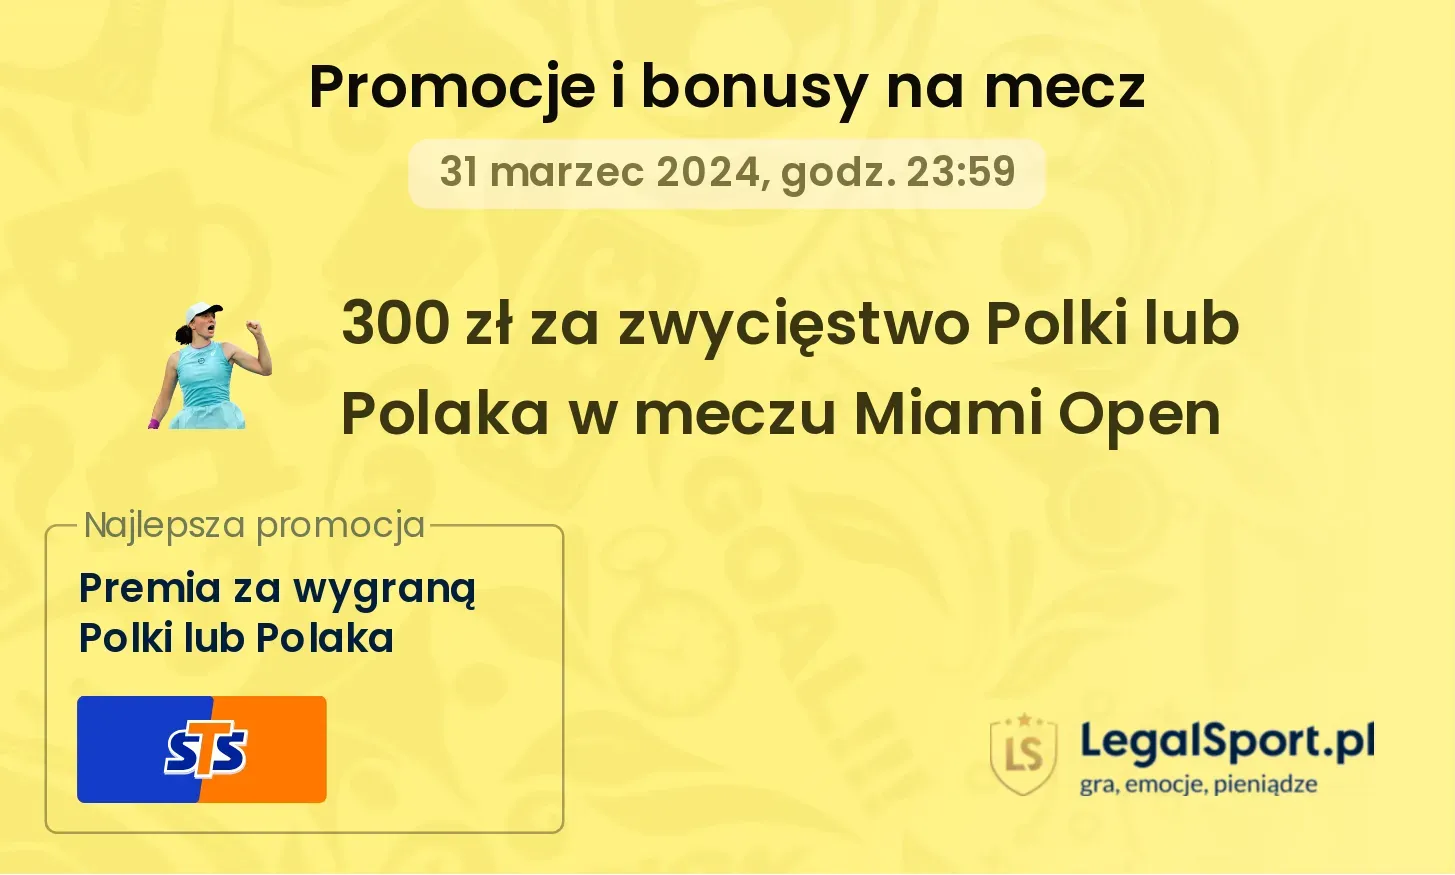 300 zł za zwycięstwo Polki lub Polaka w meczu Miami Open promocje bonusy na mecz